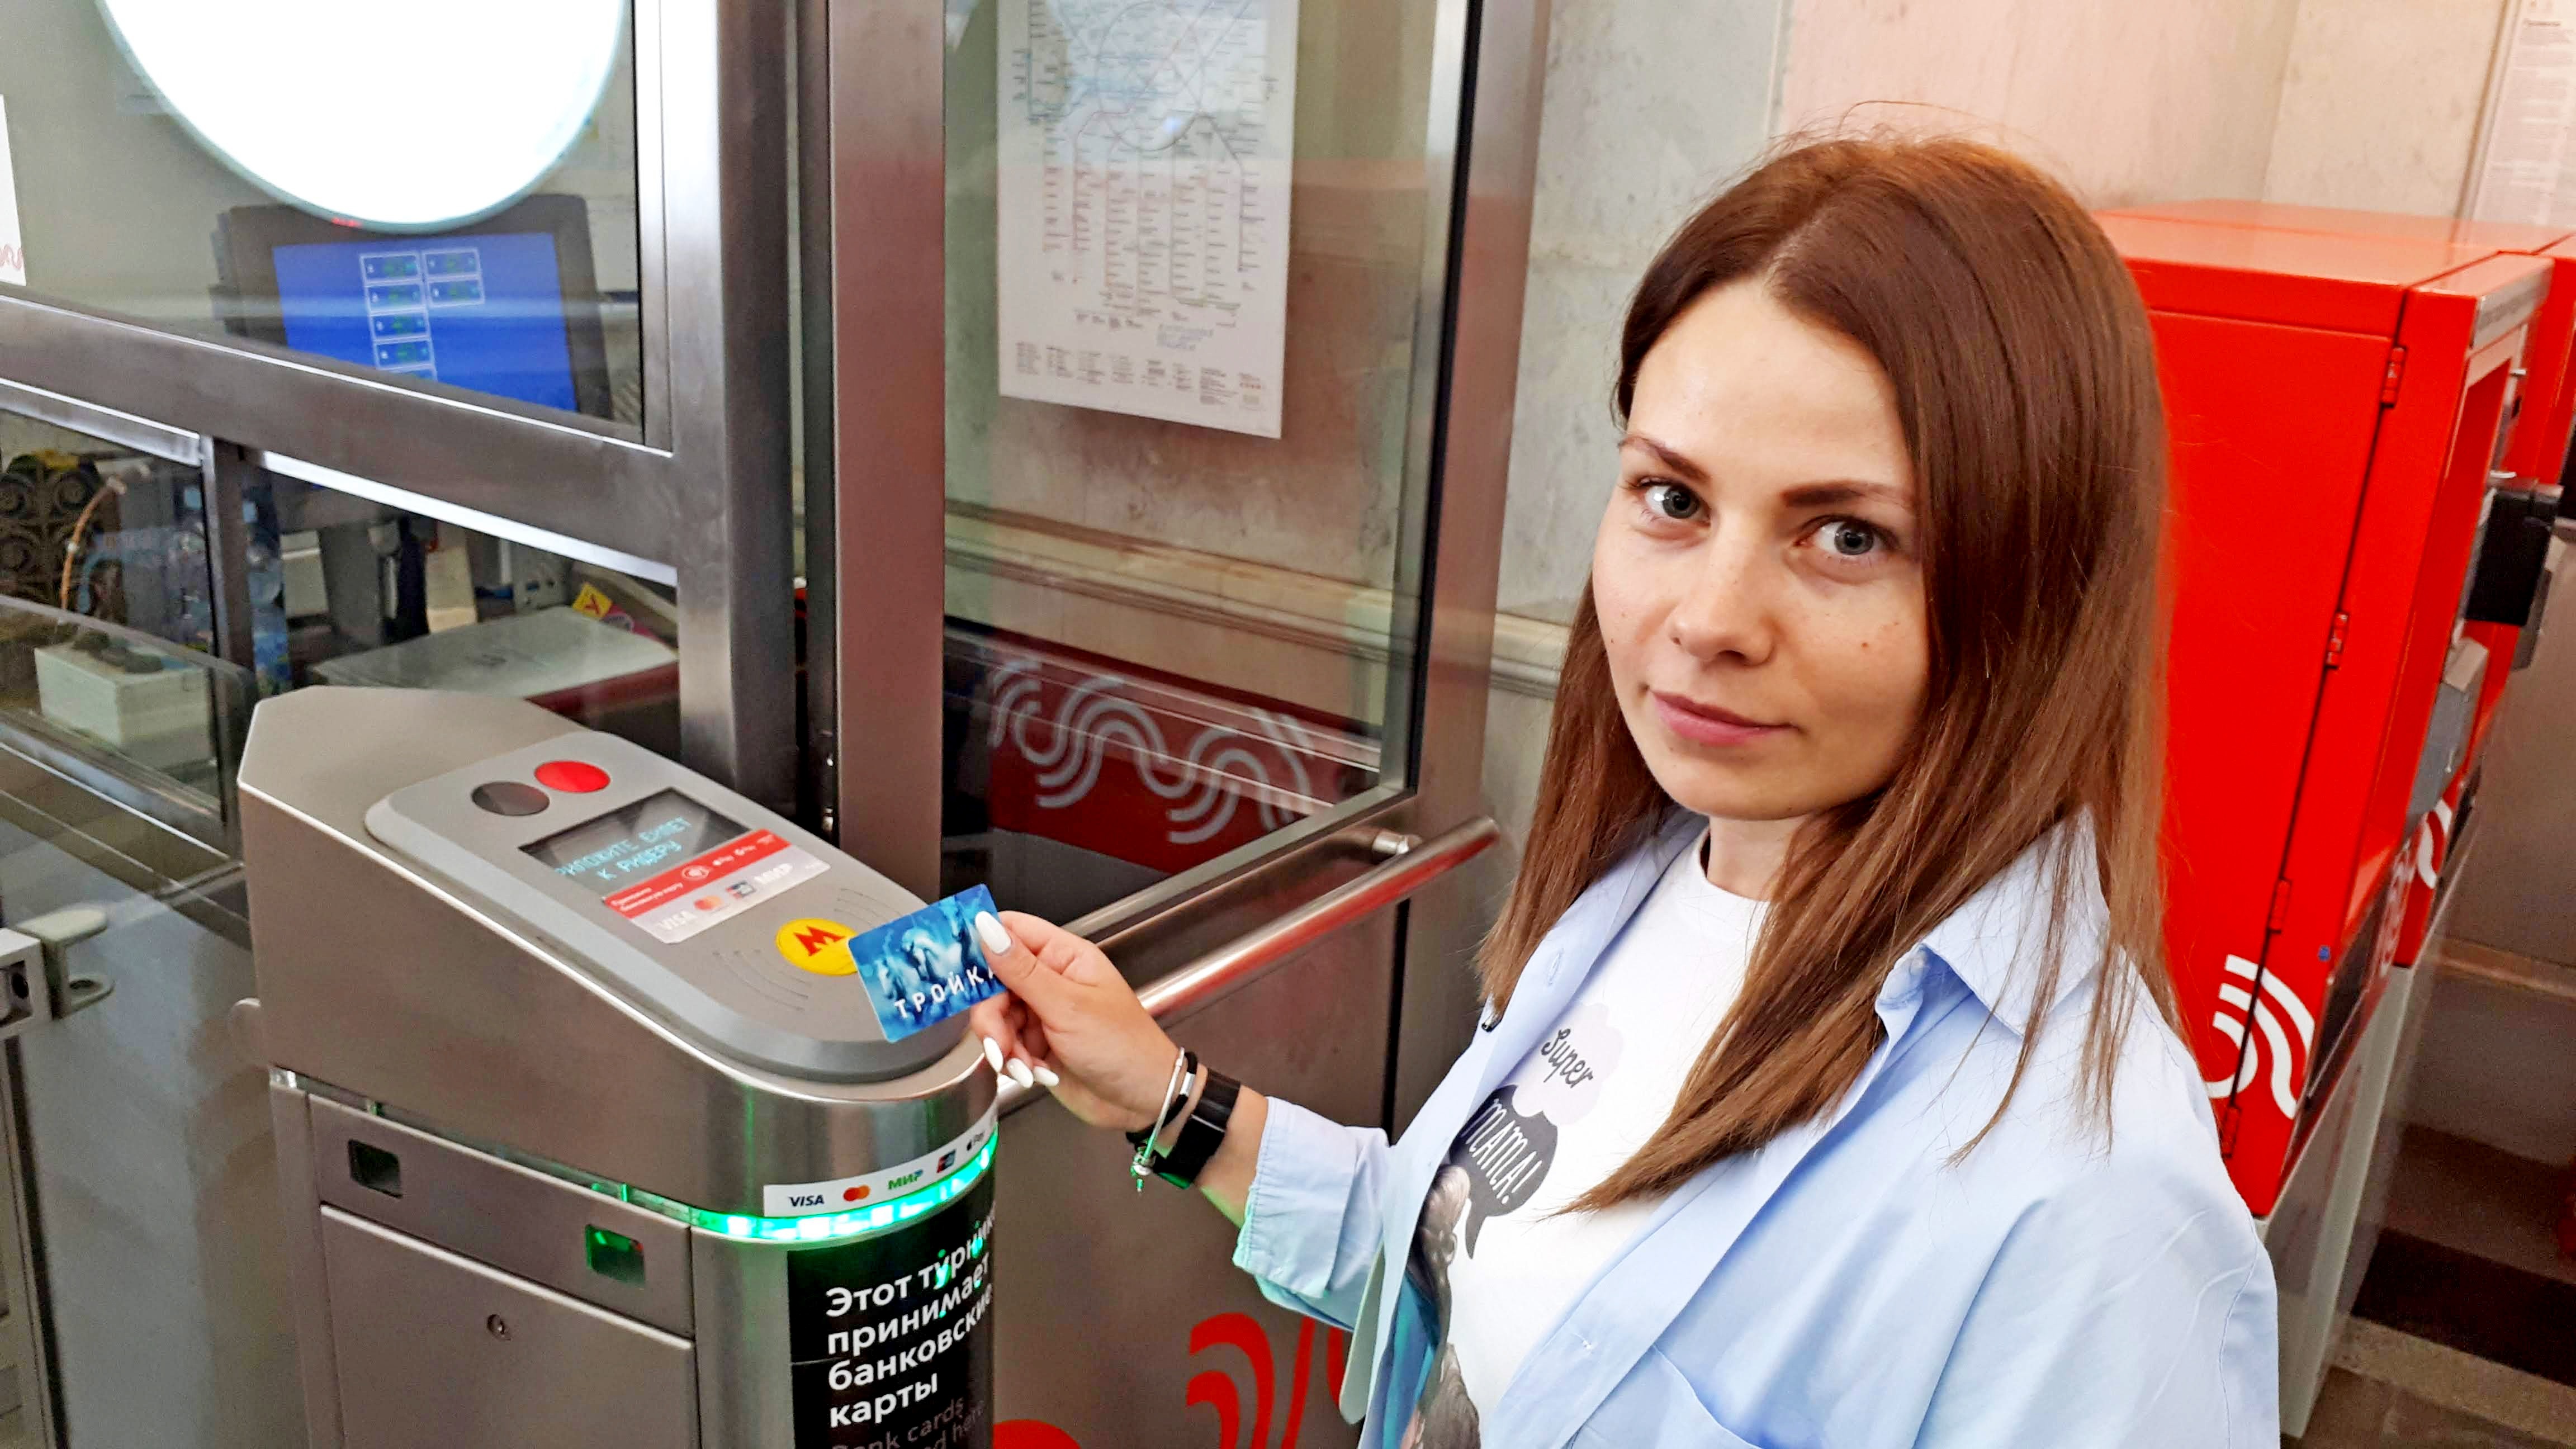 Пассажиры московского метро получат бонусы за покупки проездных билетов